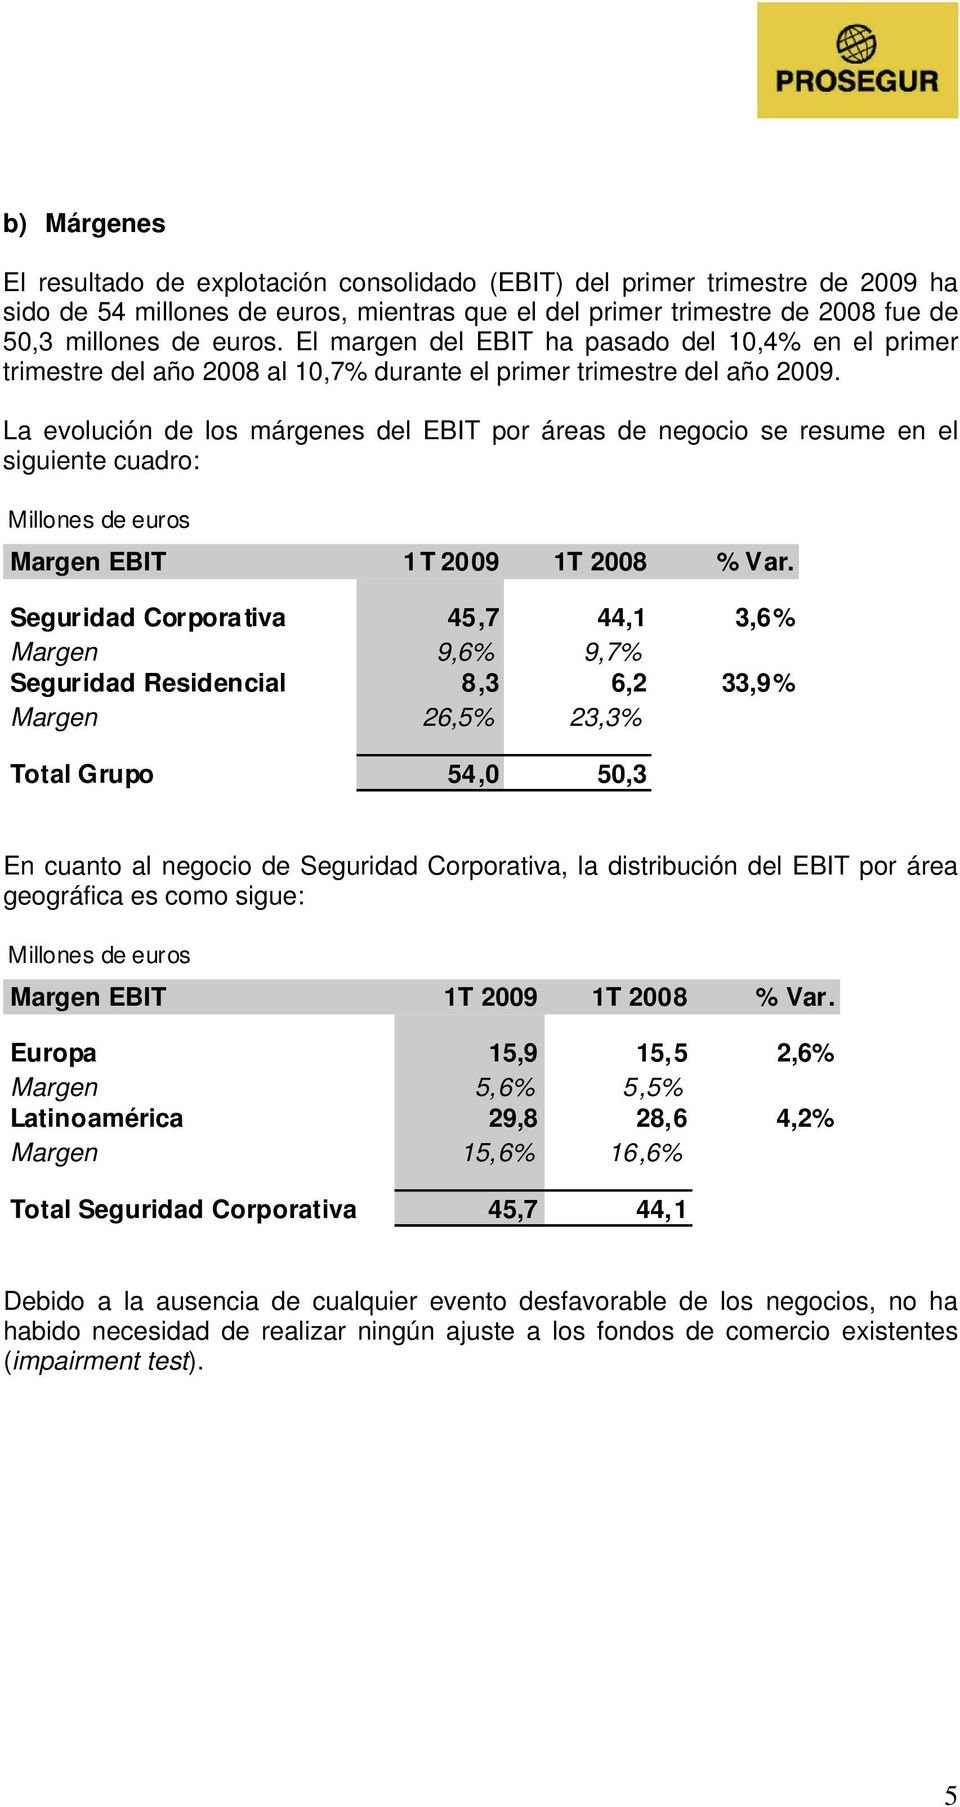 La evolución de los márgenes del EBIT por áreas de negocio se resume en el siguiente cuadro: Margen EBIT 1T 2009 1T 2008 % Var.